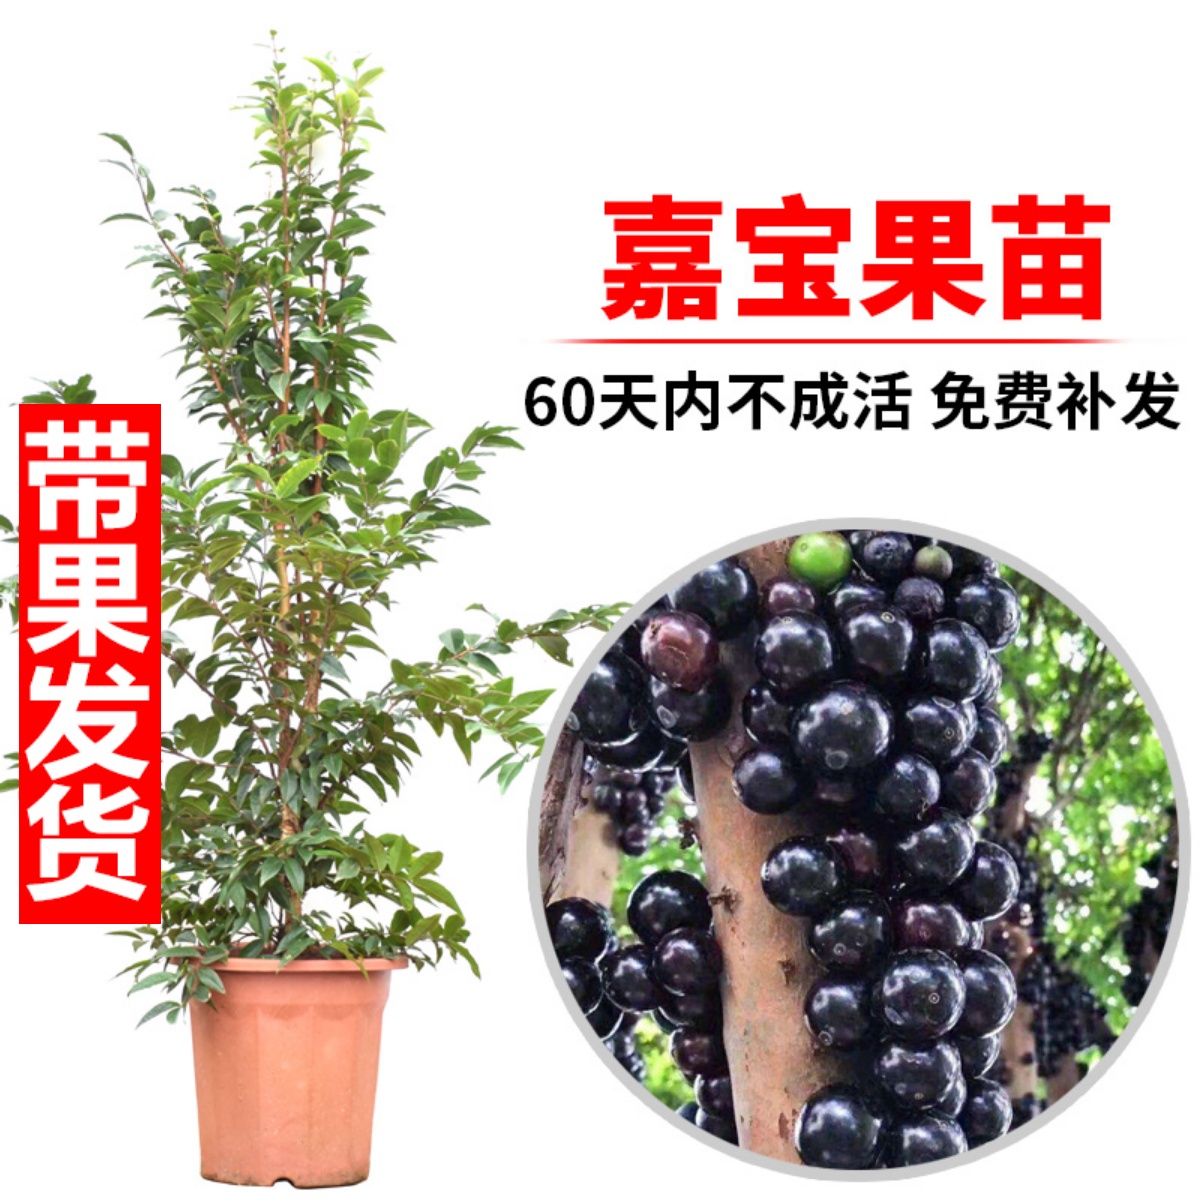 嘉宝果苗树苗台湾红妃四季早生艾斯卡嘉宝果树葡萄苗盆栽当年结果